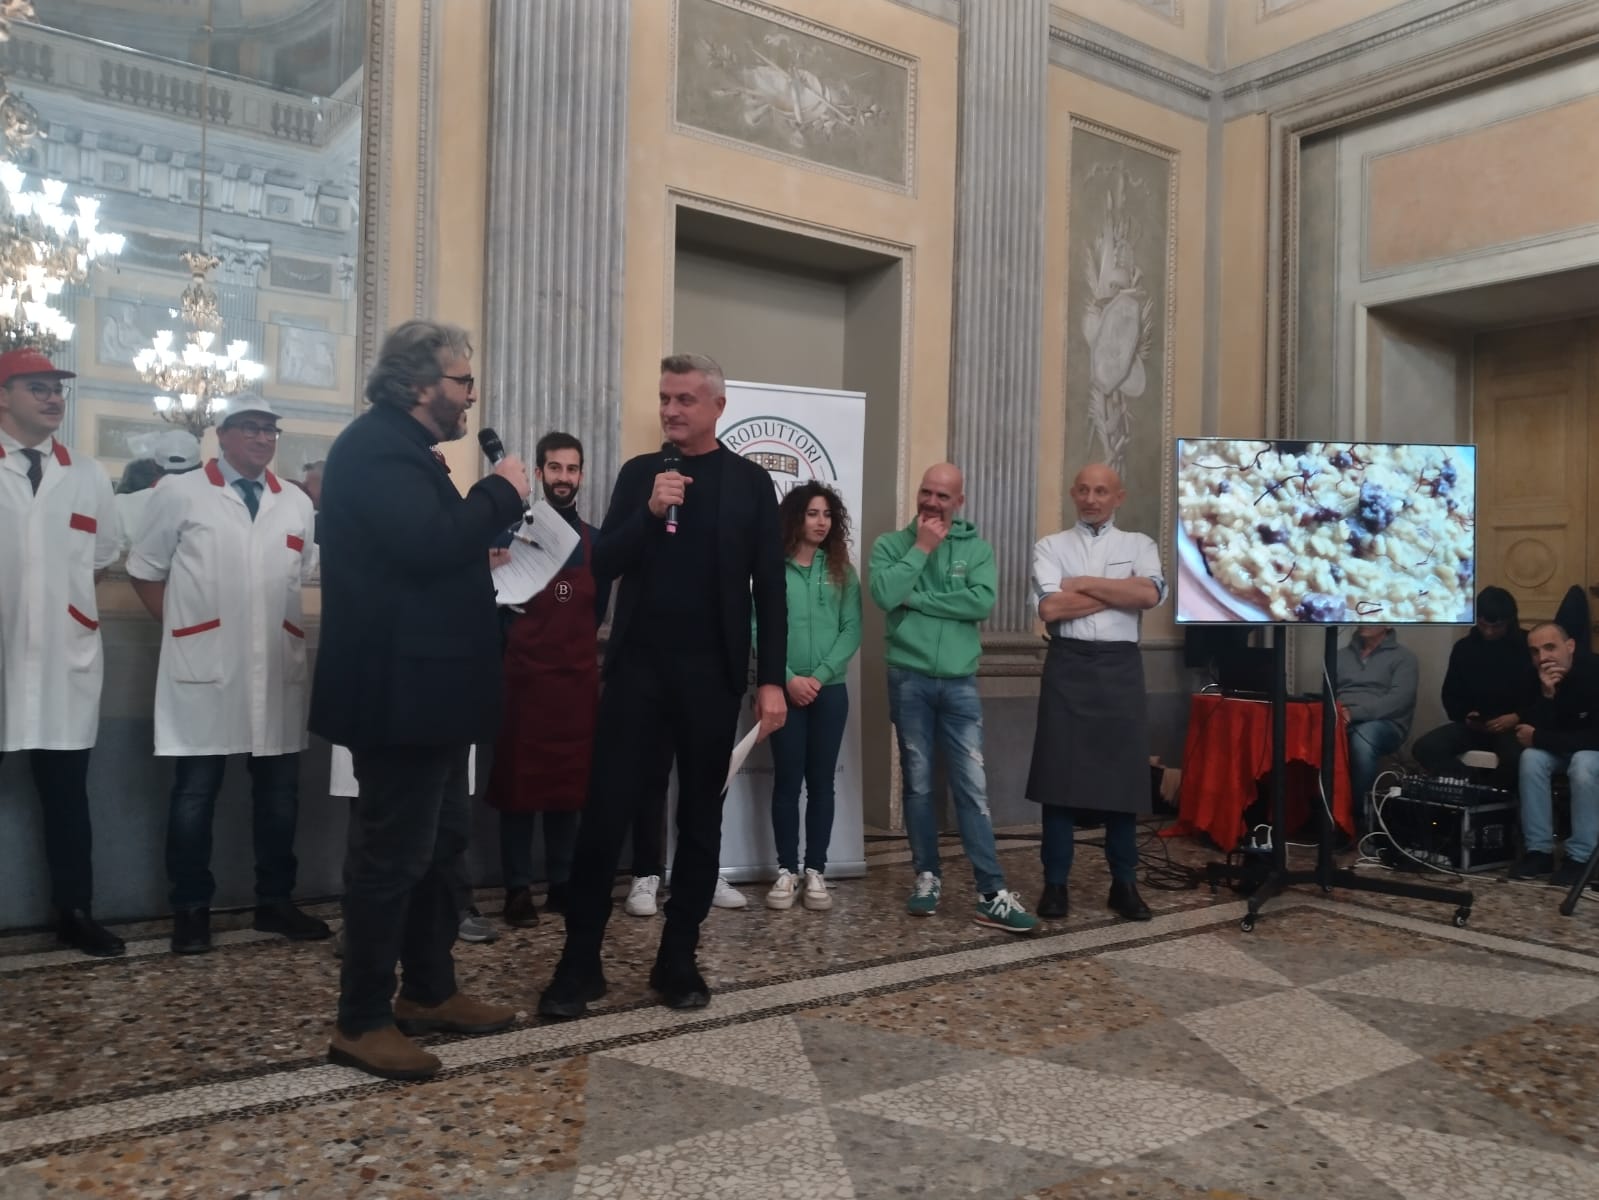 Monza Villa reale presentazione associazione produttori luganega di Monza la Mabilia di Legnano